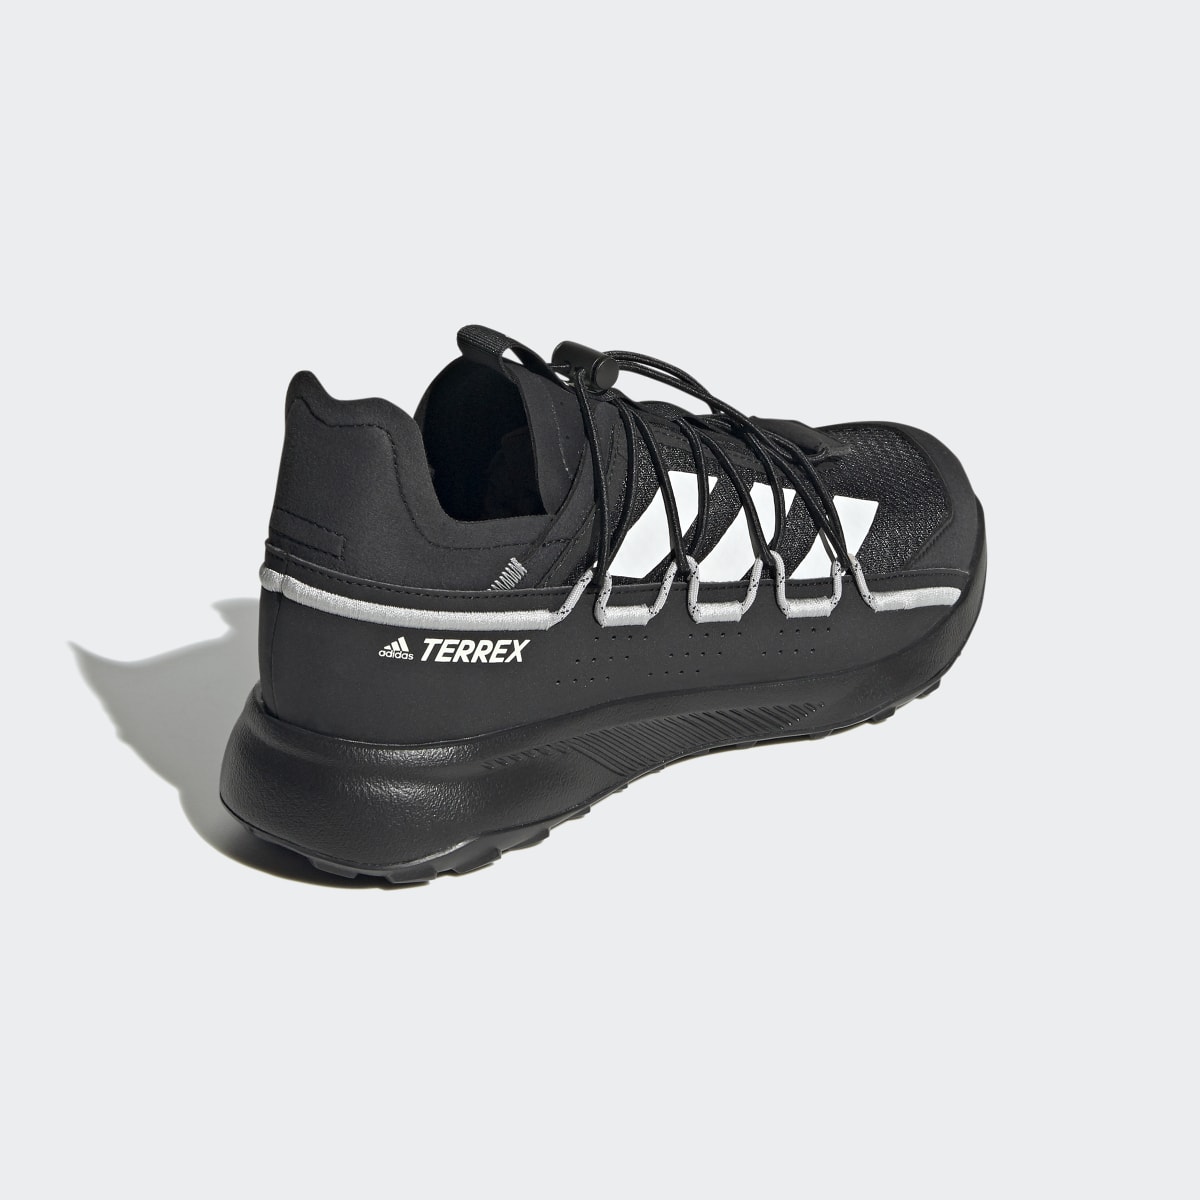 Adidas Chaussure de voyage Terrex Voyager 21. 6